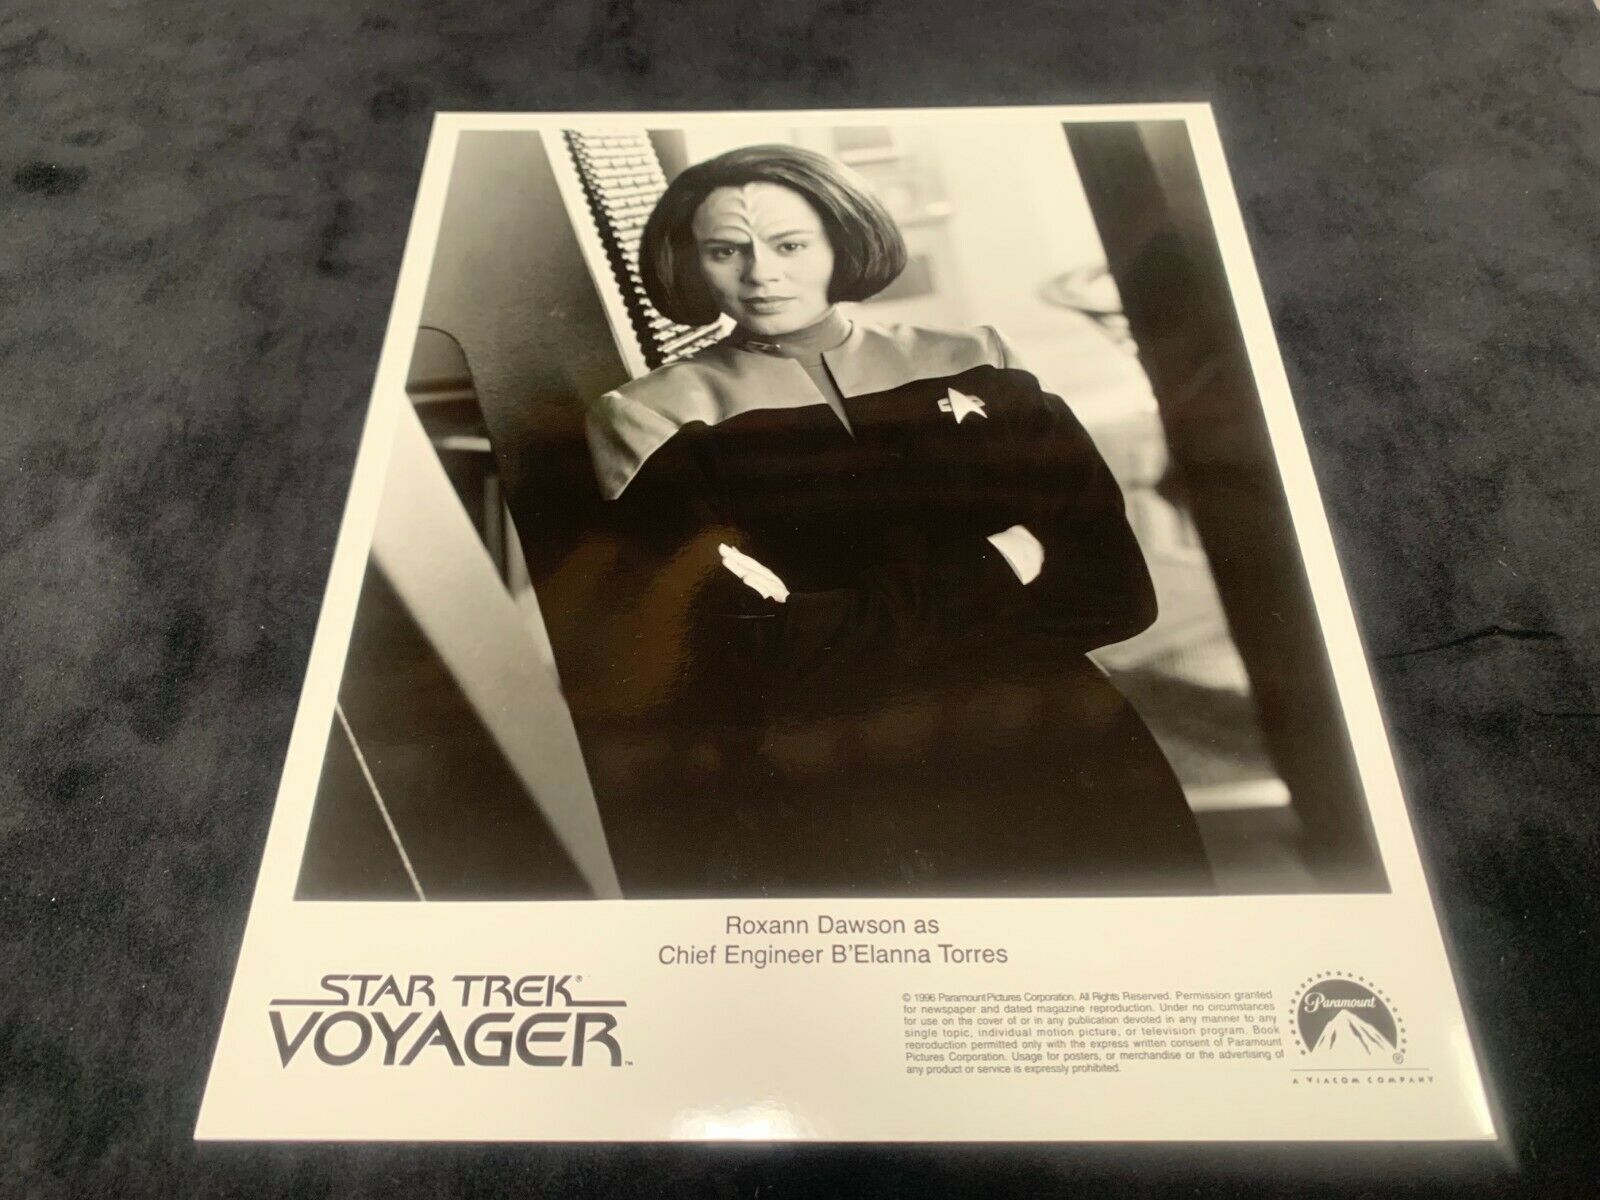 Star Trek Voyager 8x10 B&W Photo of Roxann Dawson in Excellent Condition